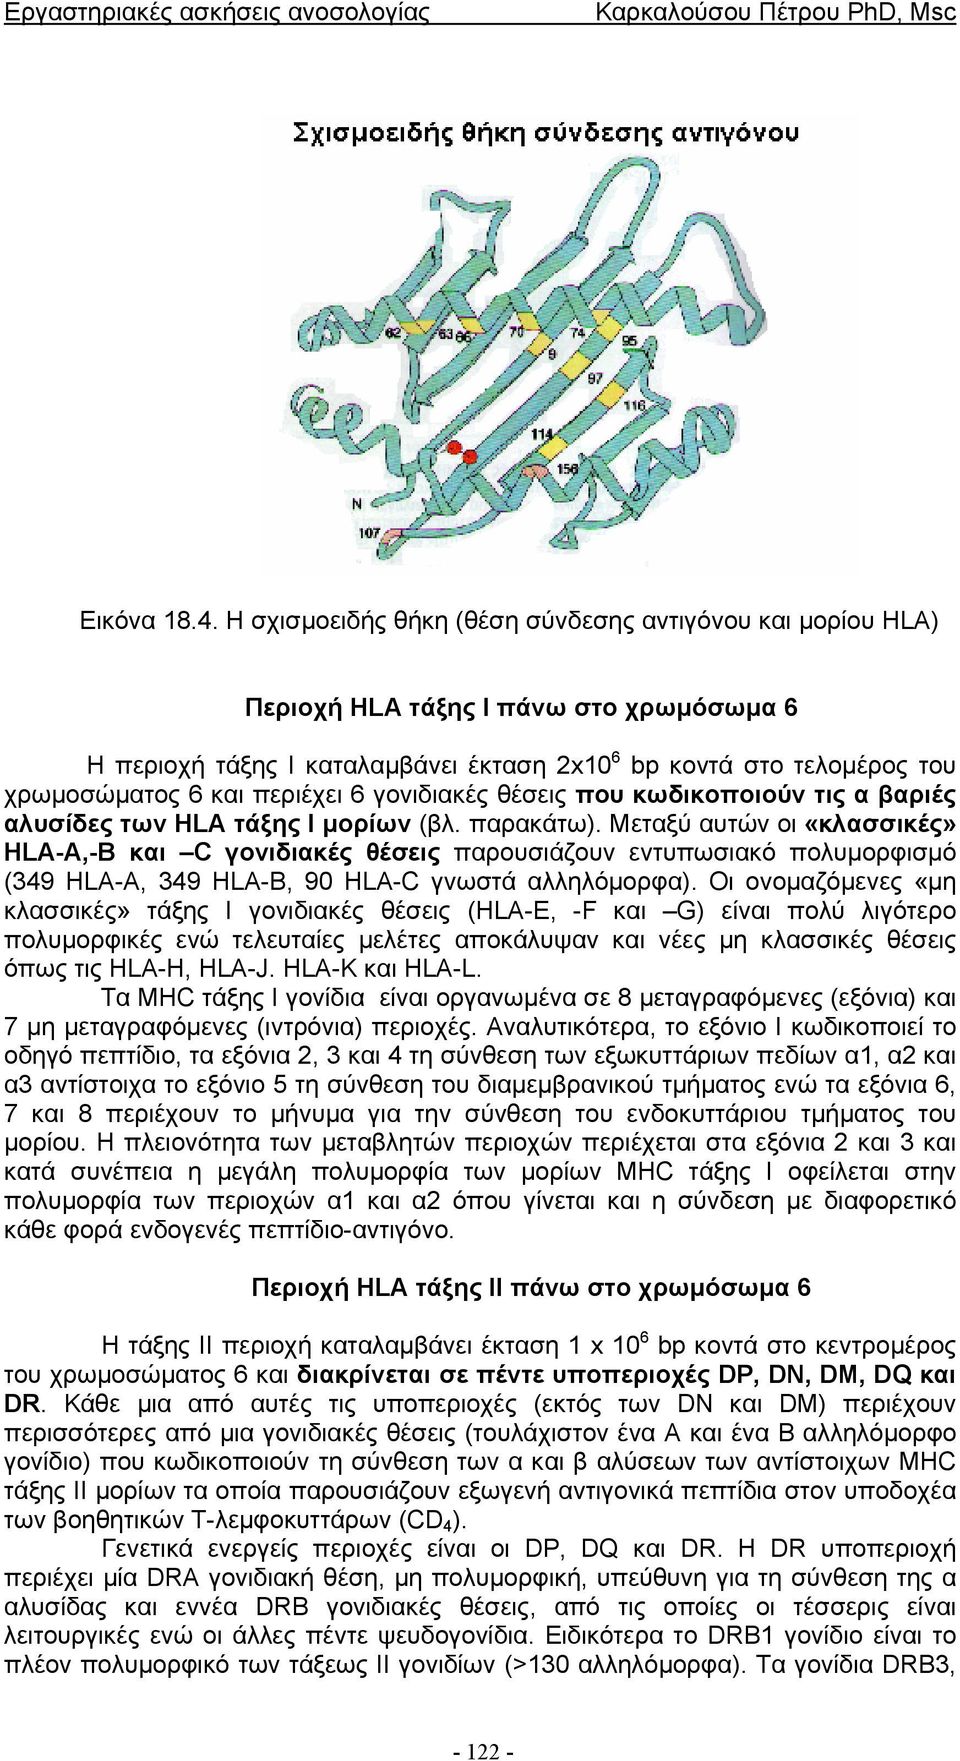 περιέχει 6 γονιδιακές θέσεις που κωδικοποιούν τις α βαριές αλυσίδες των HLA τάξης Ι µορίων (βλ. παρακάτω).